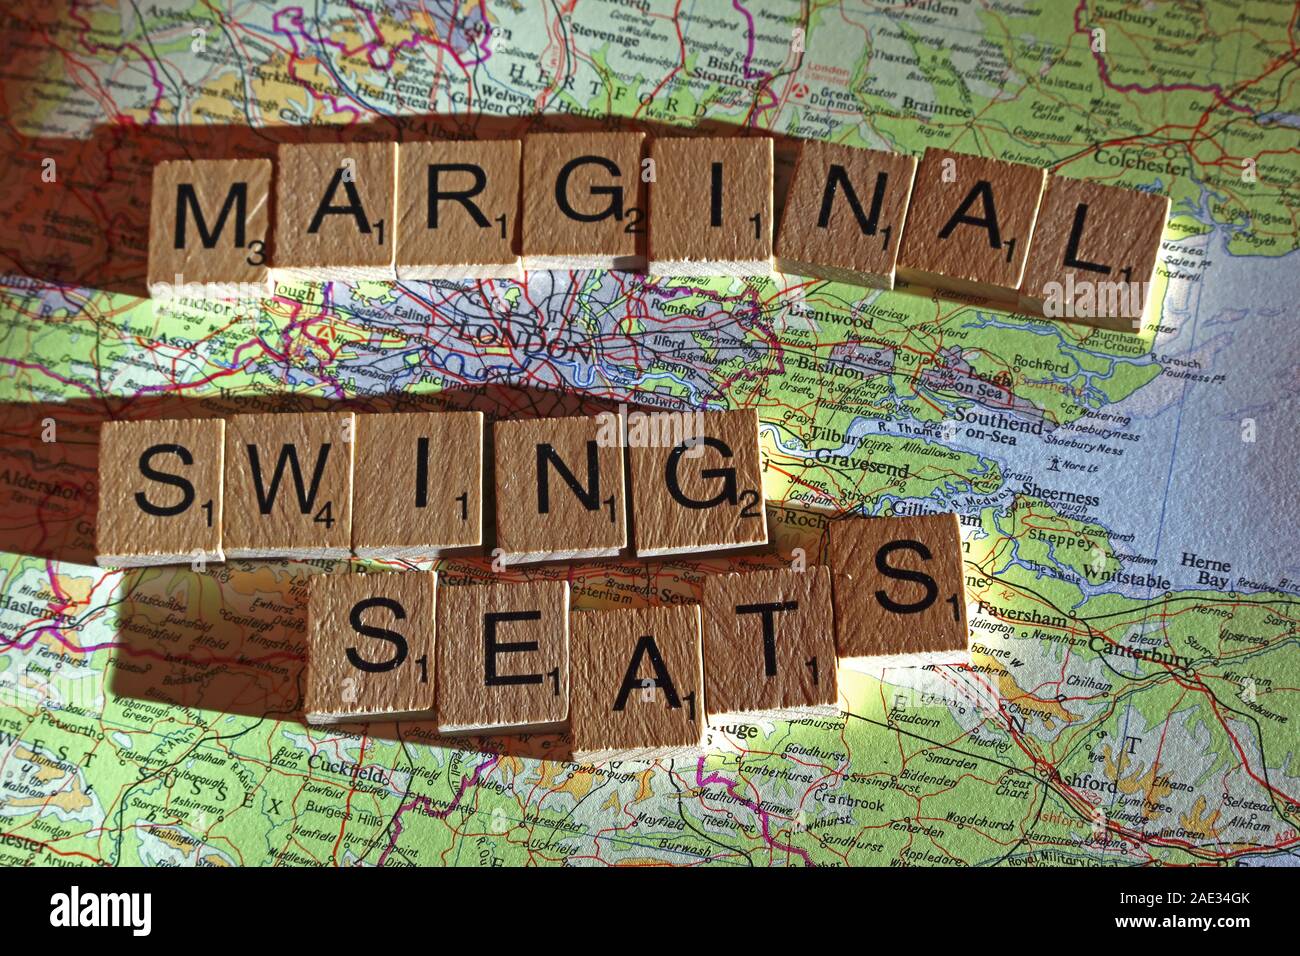 Rn Swing Sitze Dinkel in Scrabble Buchstaben auf einem UK Karte - allgemeine Wahlen, Wahlen, Parteien, Politiker, Parteien, Ansprüche, Zweifel Stockfoto